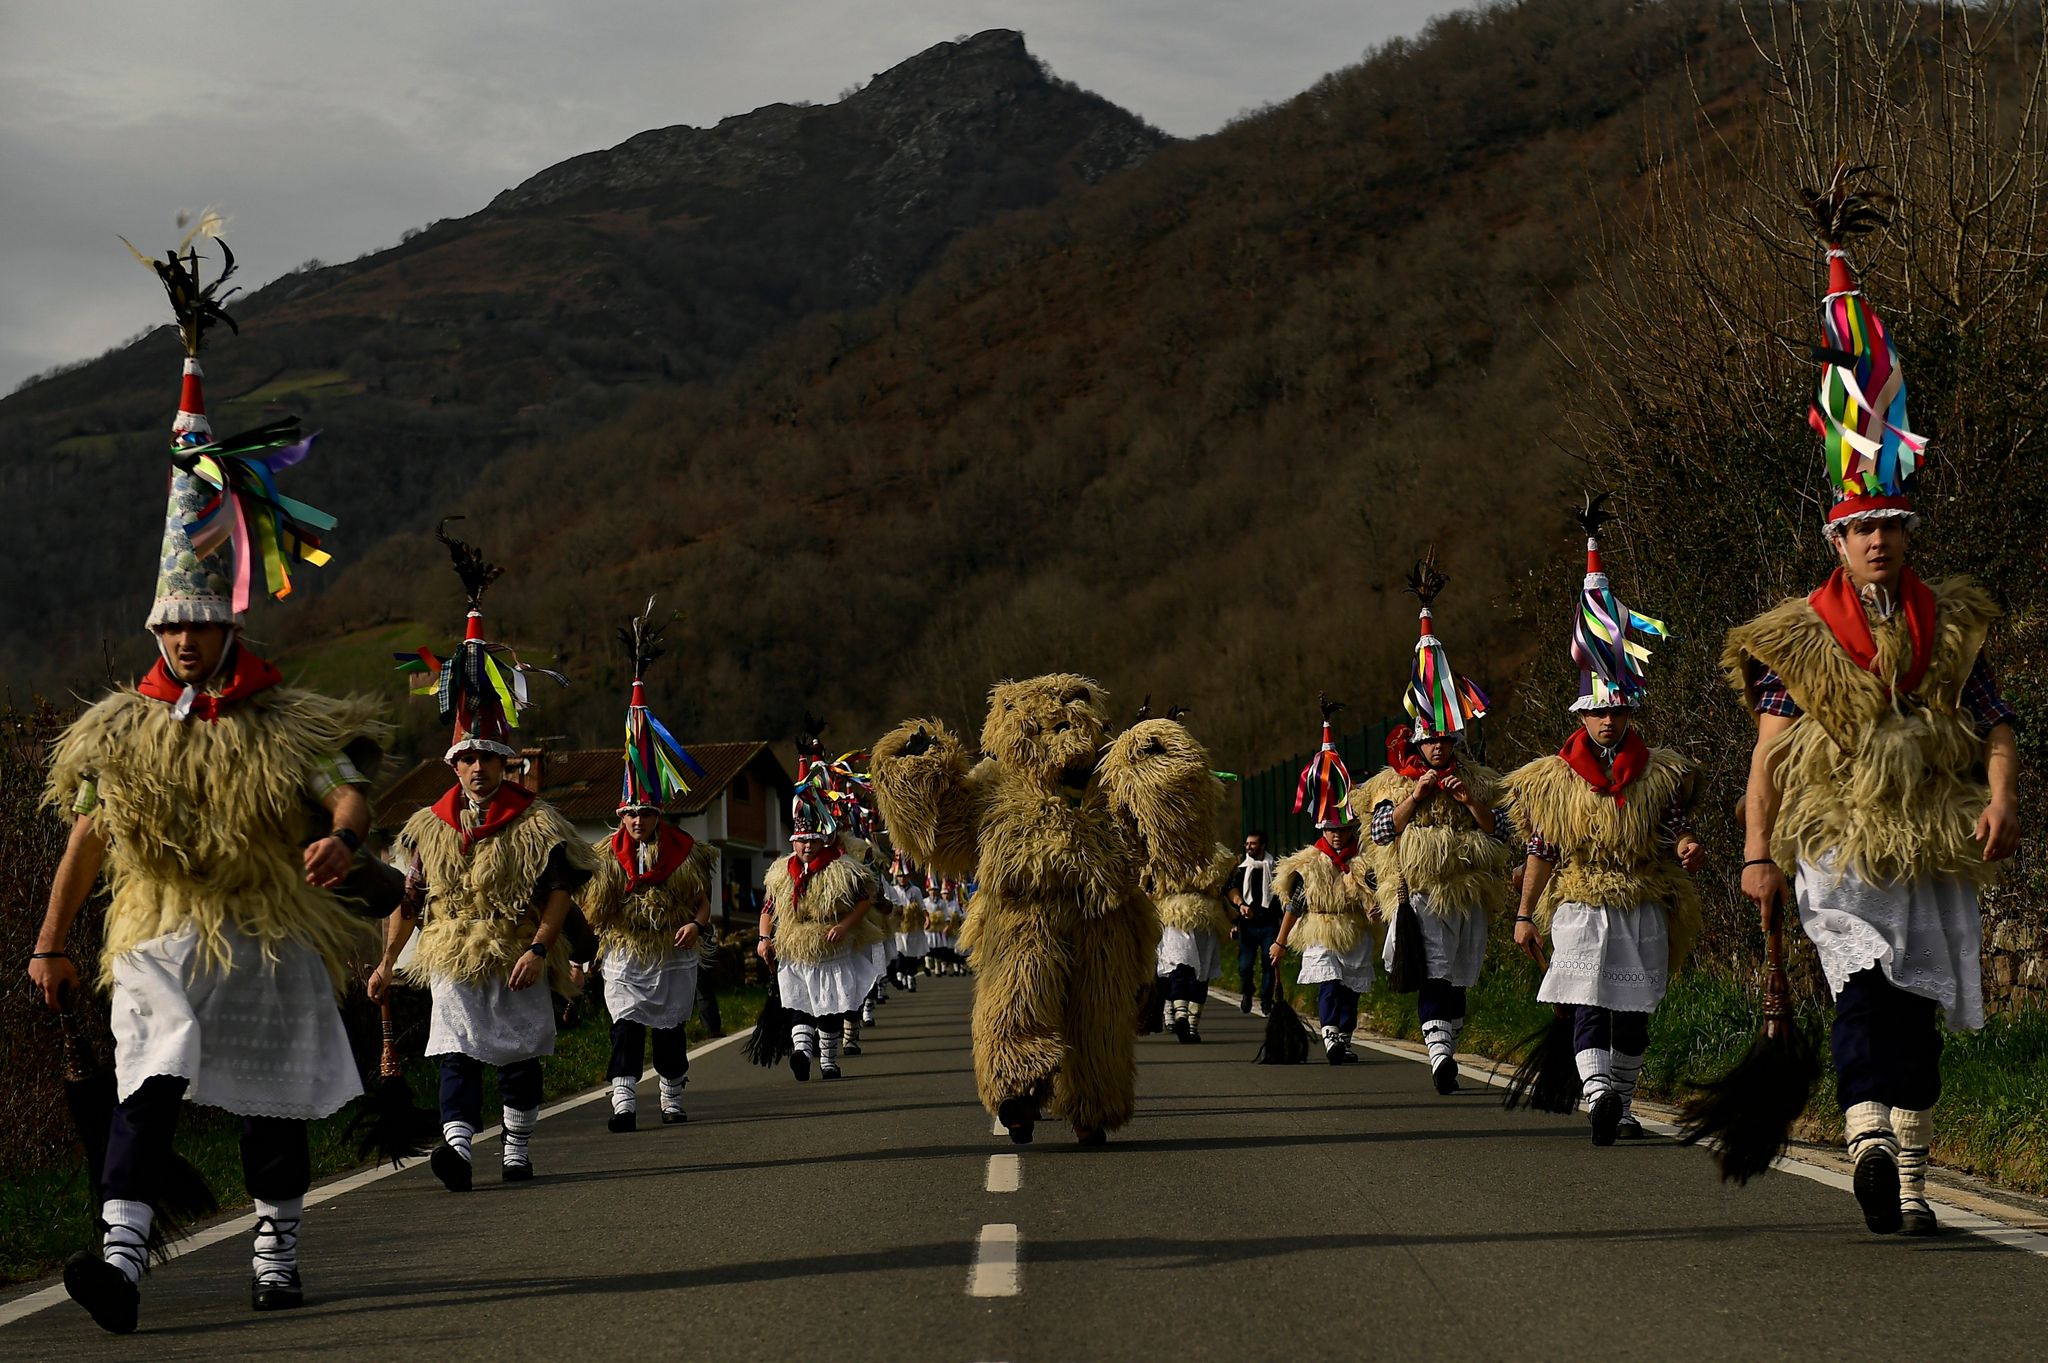 In Spitzenunterröcken und Schafsfellen gekleidet, nimmt diese Gruppe zwischen den Pyrenäendörfern Ituren und Zubieta an einem der ältesten Karnevalsfeste Europas teil.